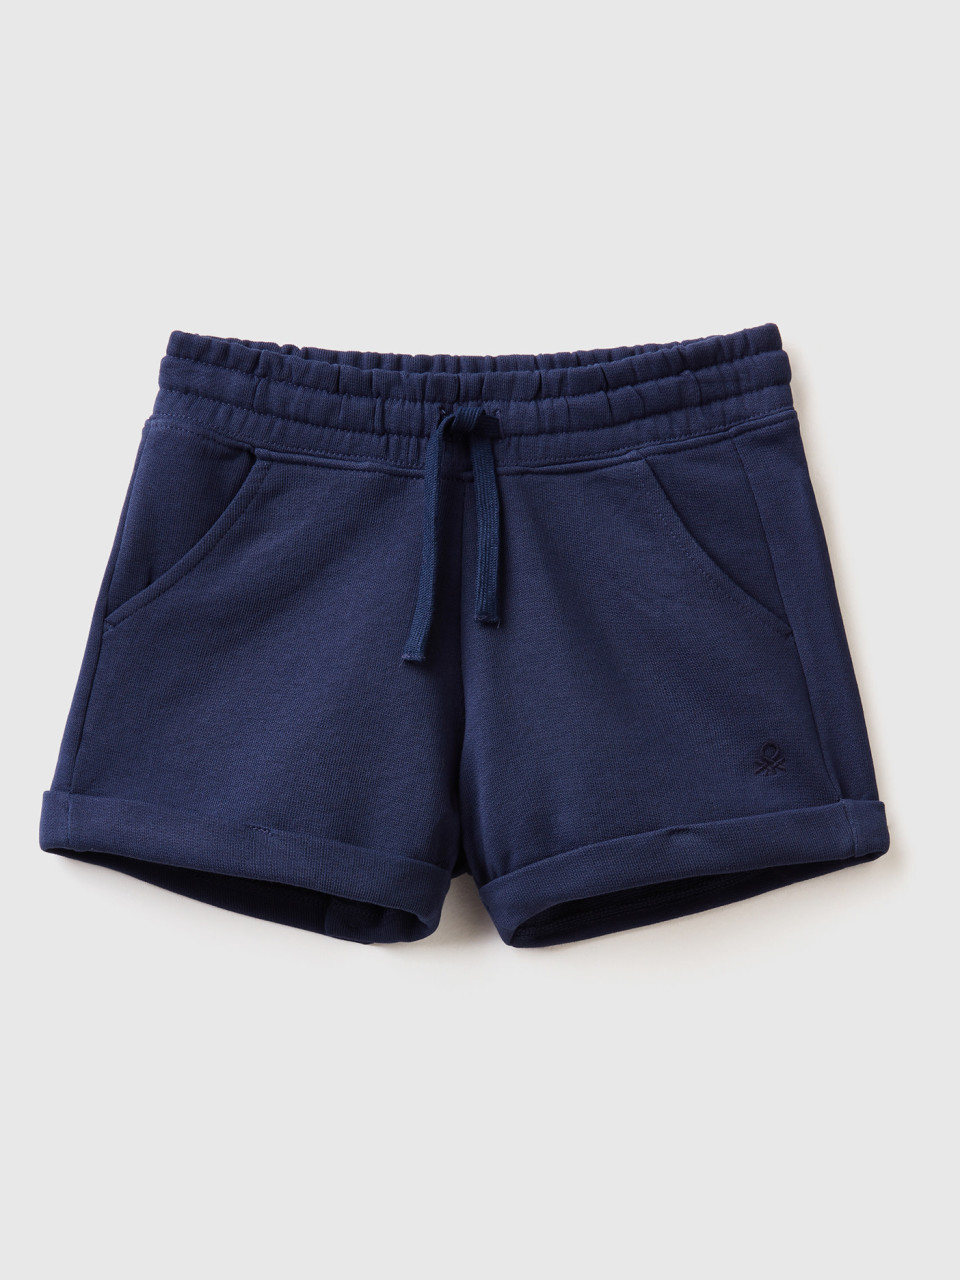 Benetton, 100% Cotton Sweat Shorts, Dark Blue, Kids